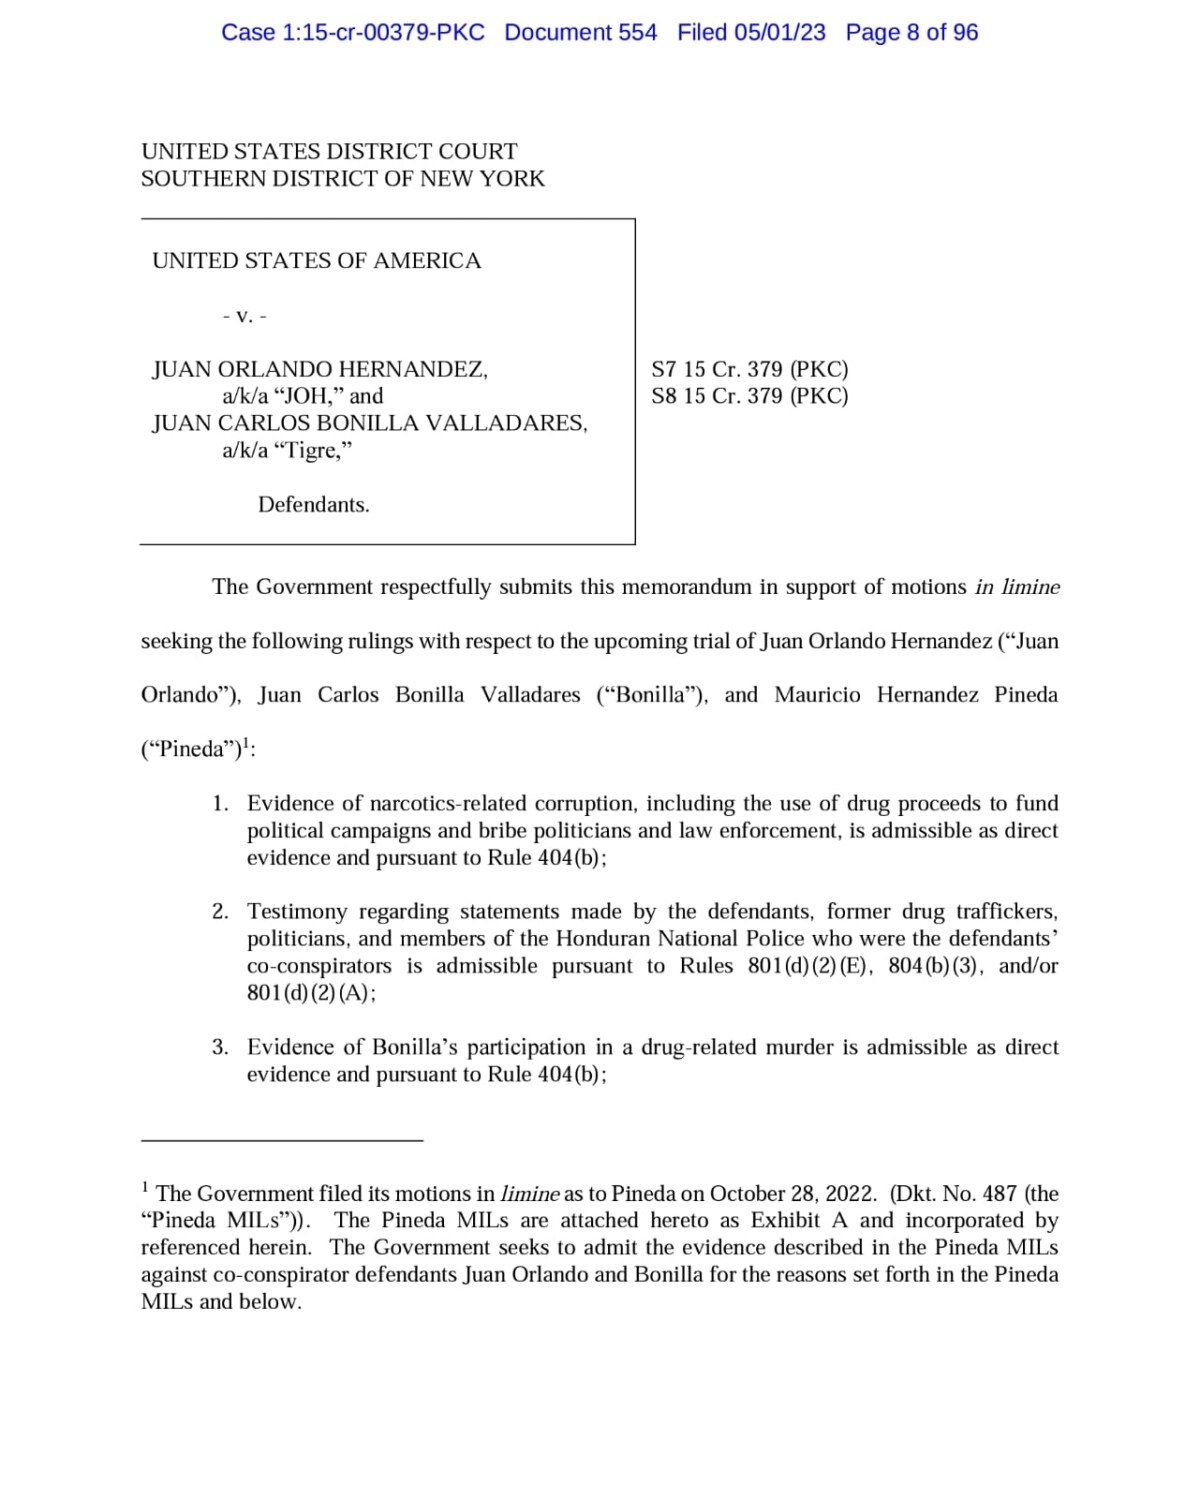 Informe con carga probatoria contra JOH presentada por la Fiscalía a la Corte del Distrito Sur de New York 01